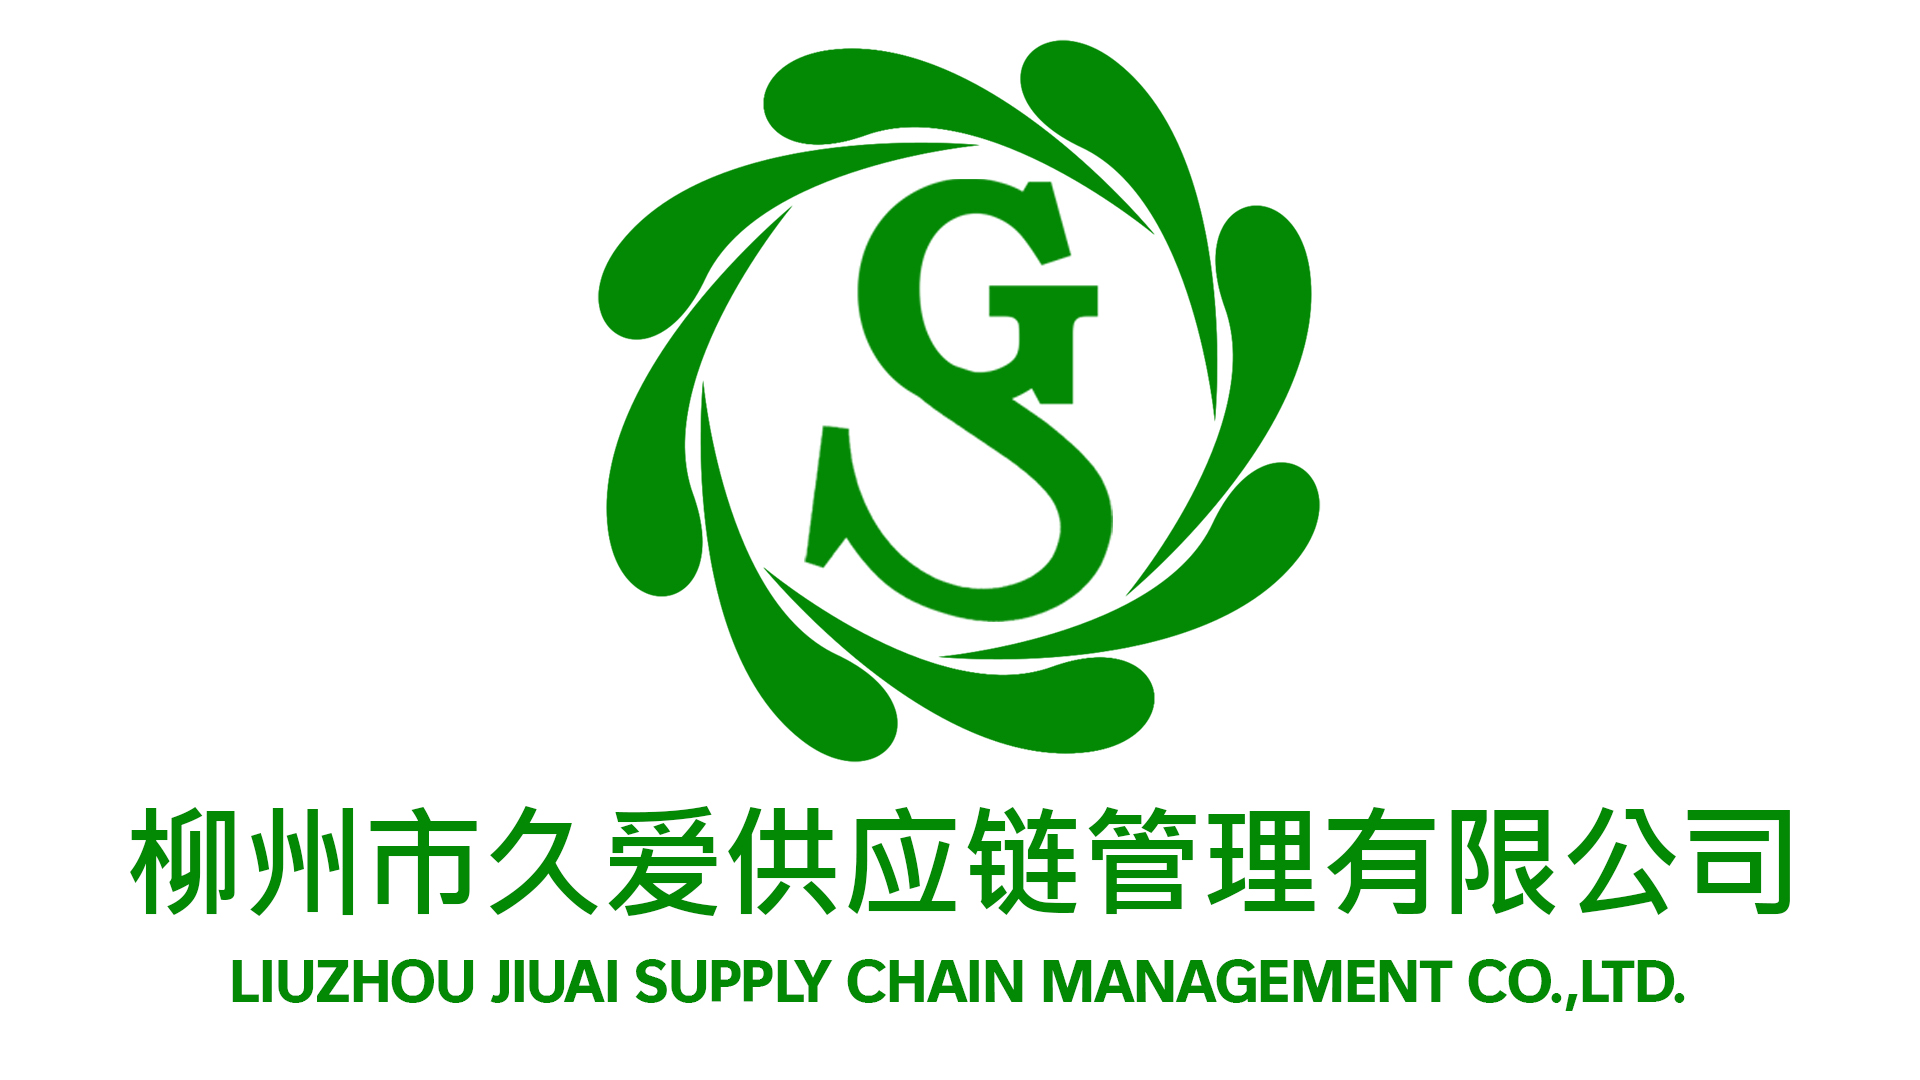 LIUZHOU JIUAI SUPPLY CHAIN MANAGEMENT COMPANY CO.,LTD.